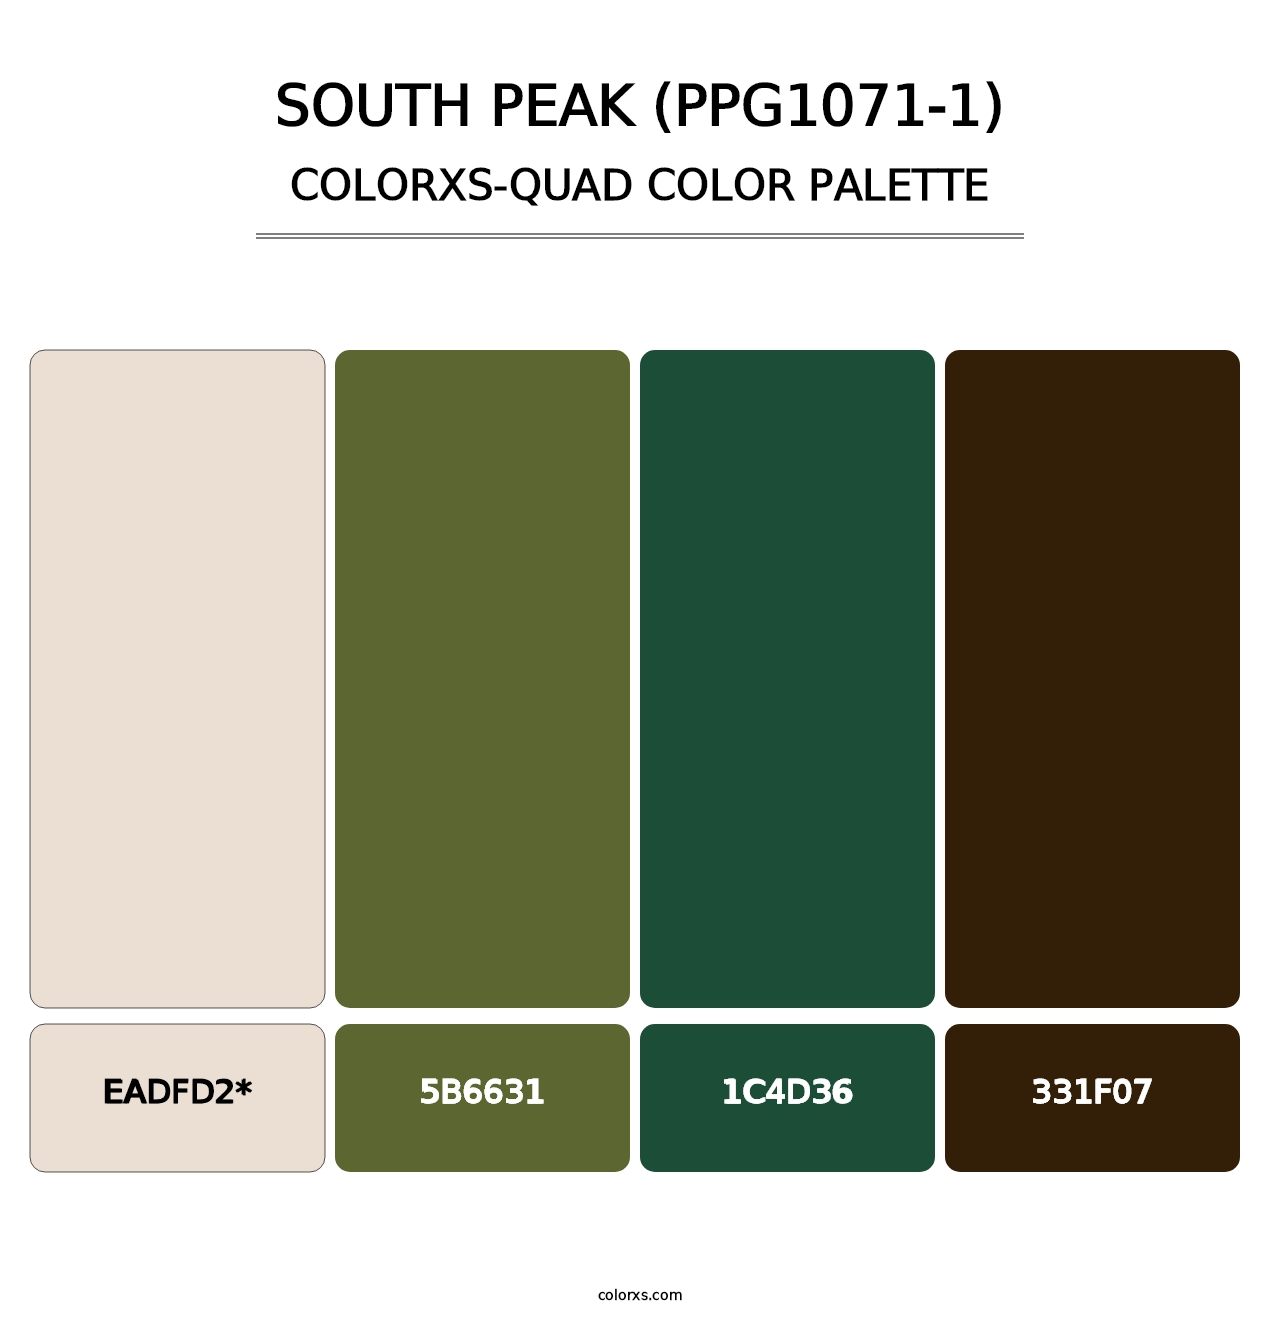 South Peak (PPG1071-1) - Colorxs Quad Palette